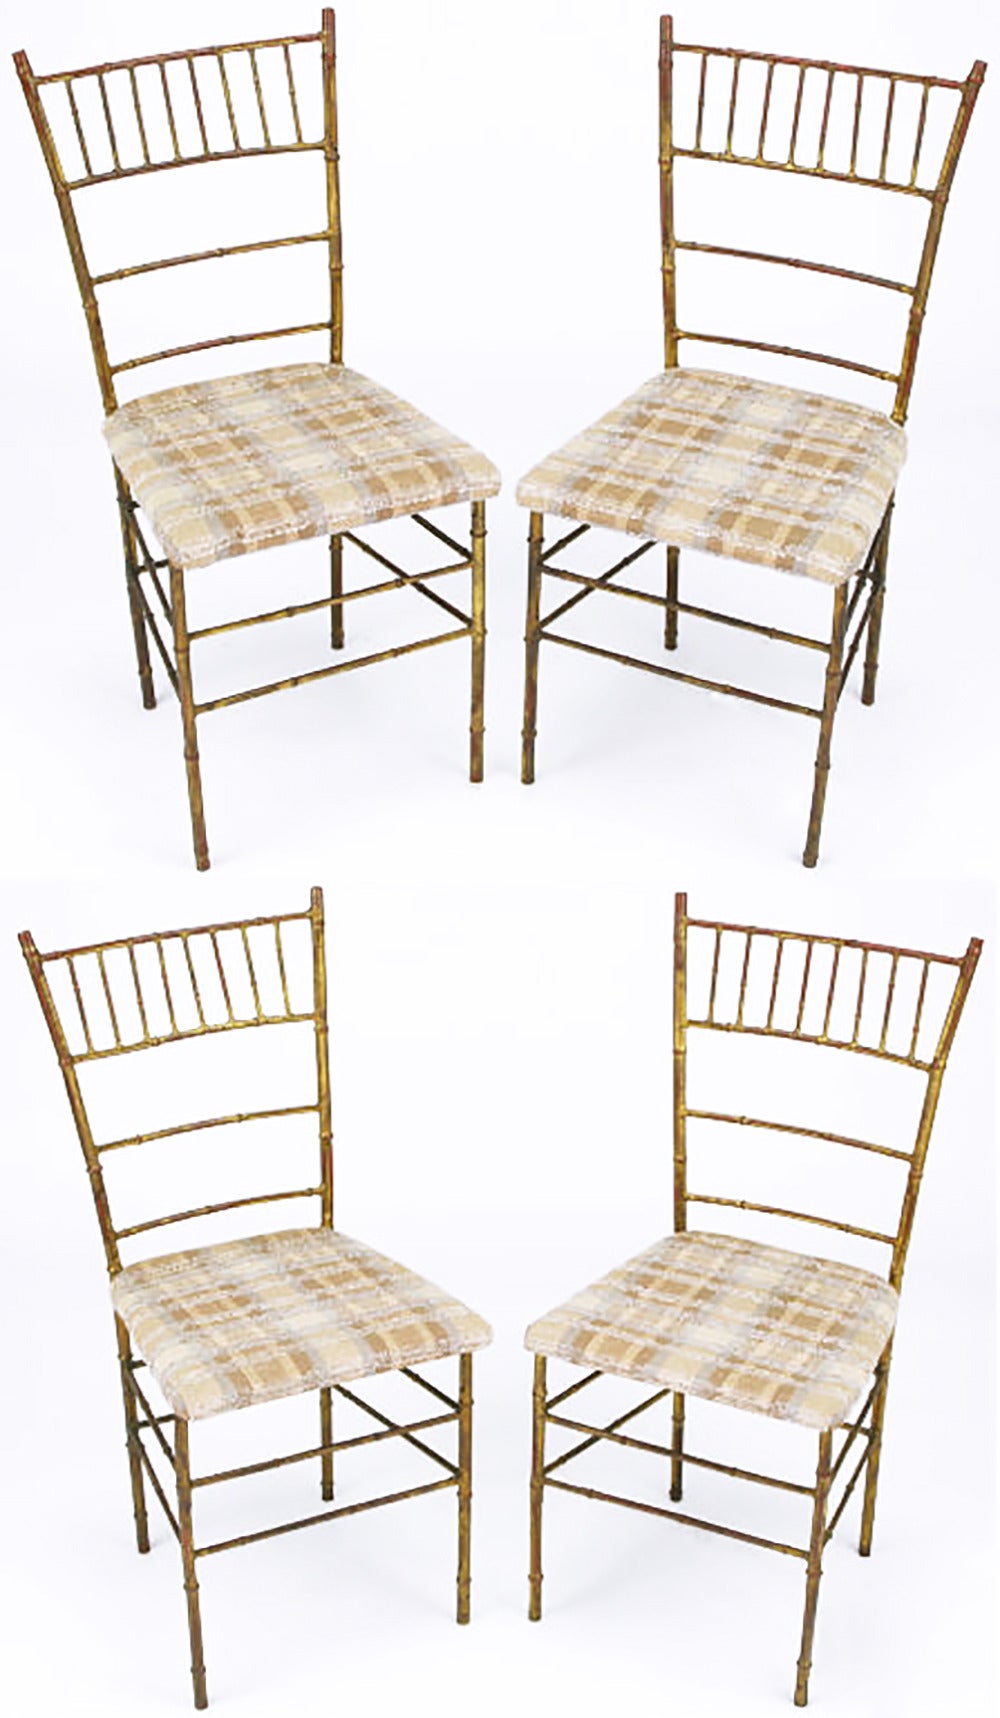 Ensemble de quatre chaises de salle à manger de style Chiavari en métal doré vieilli en forme de bambou stylisé avec sièges rembourrés. Siège recouvert d'un coton texturé par des hachures croisées dans les tons beige, marron et bleu clair.